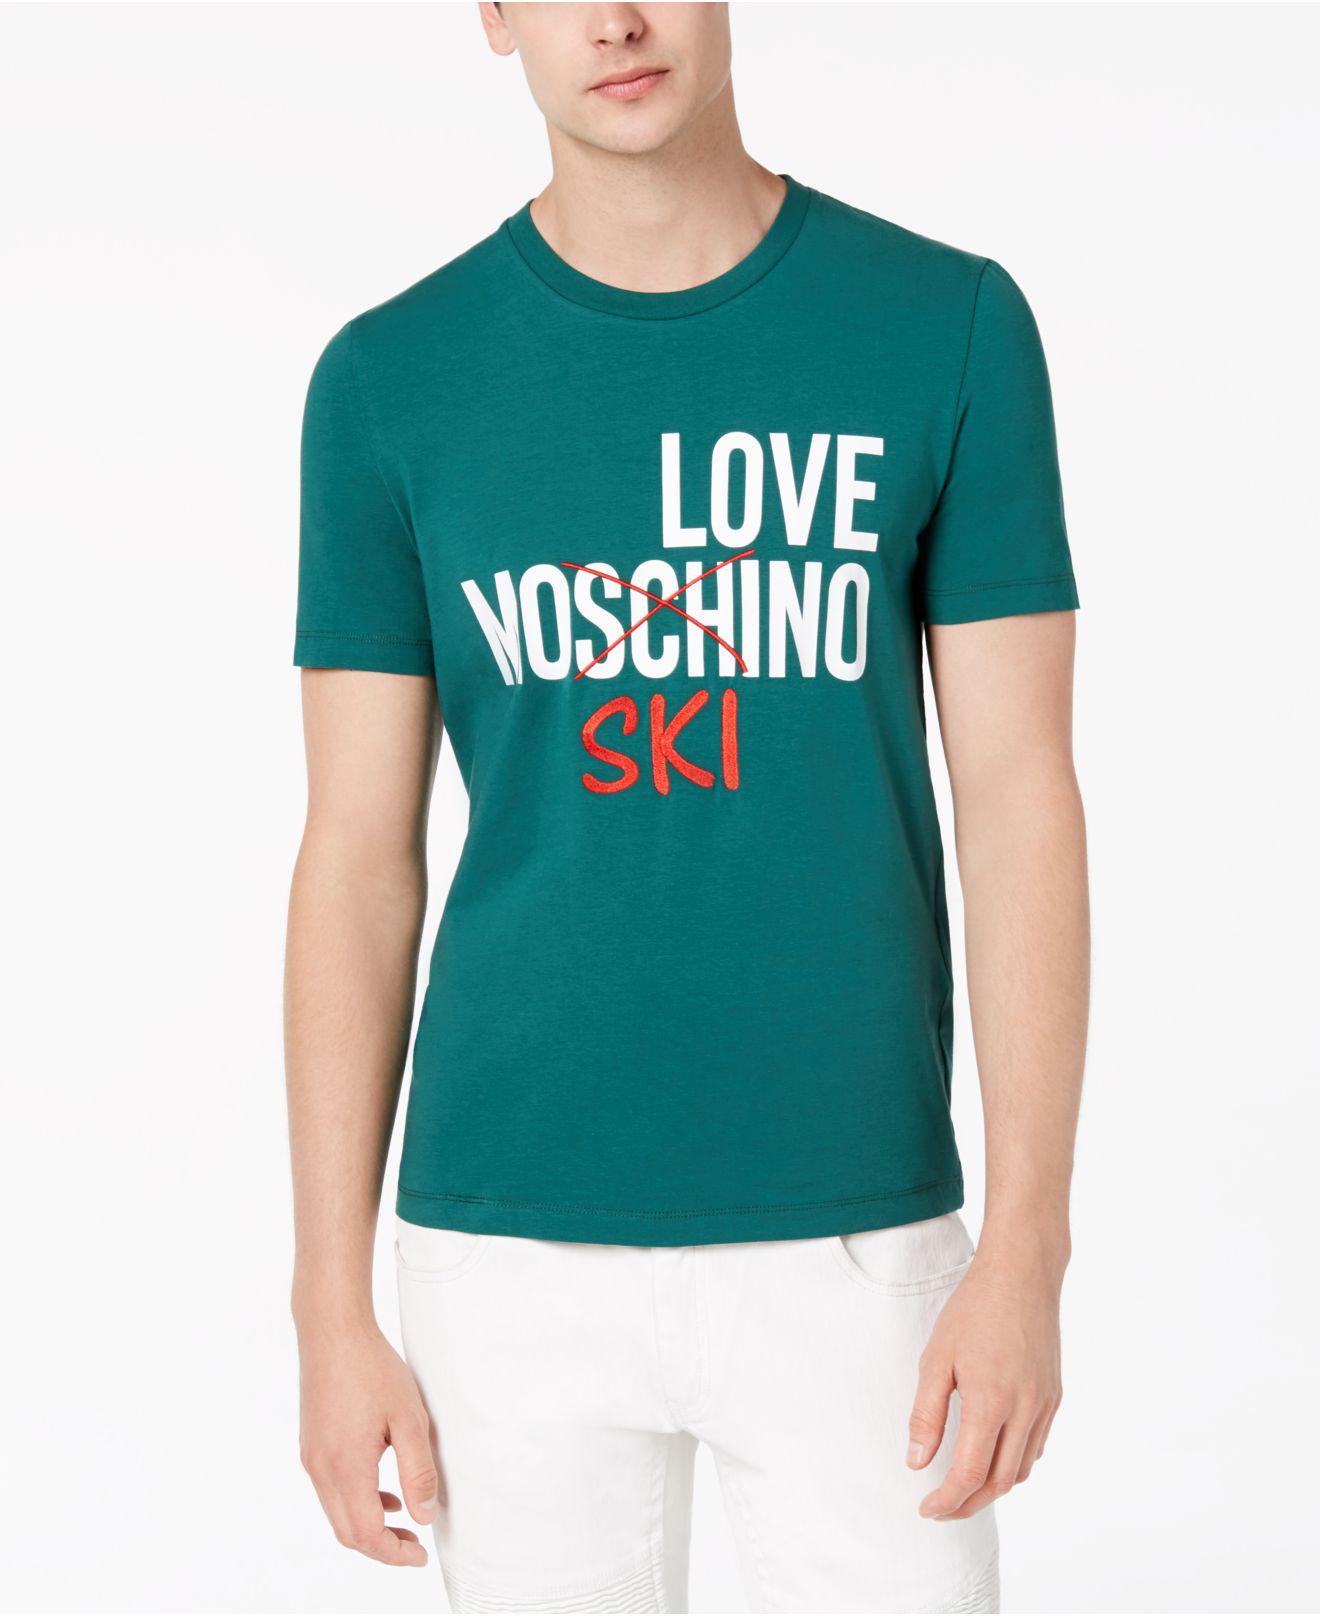 Love Moschino T Shirt Store, 52% OFF | www.ingeniovirtual.com